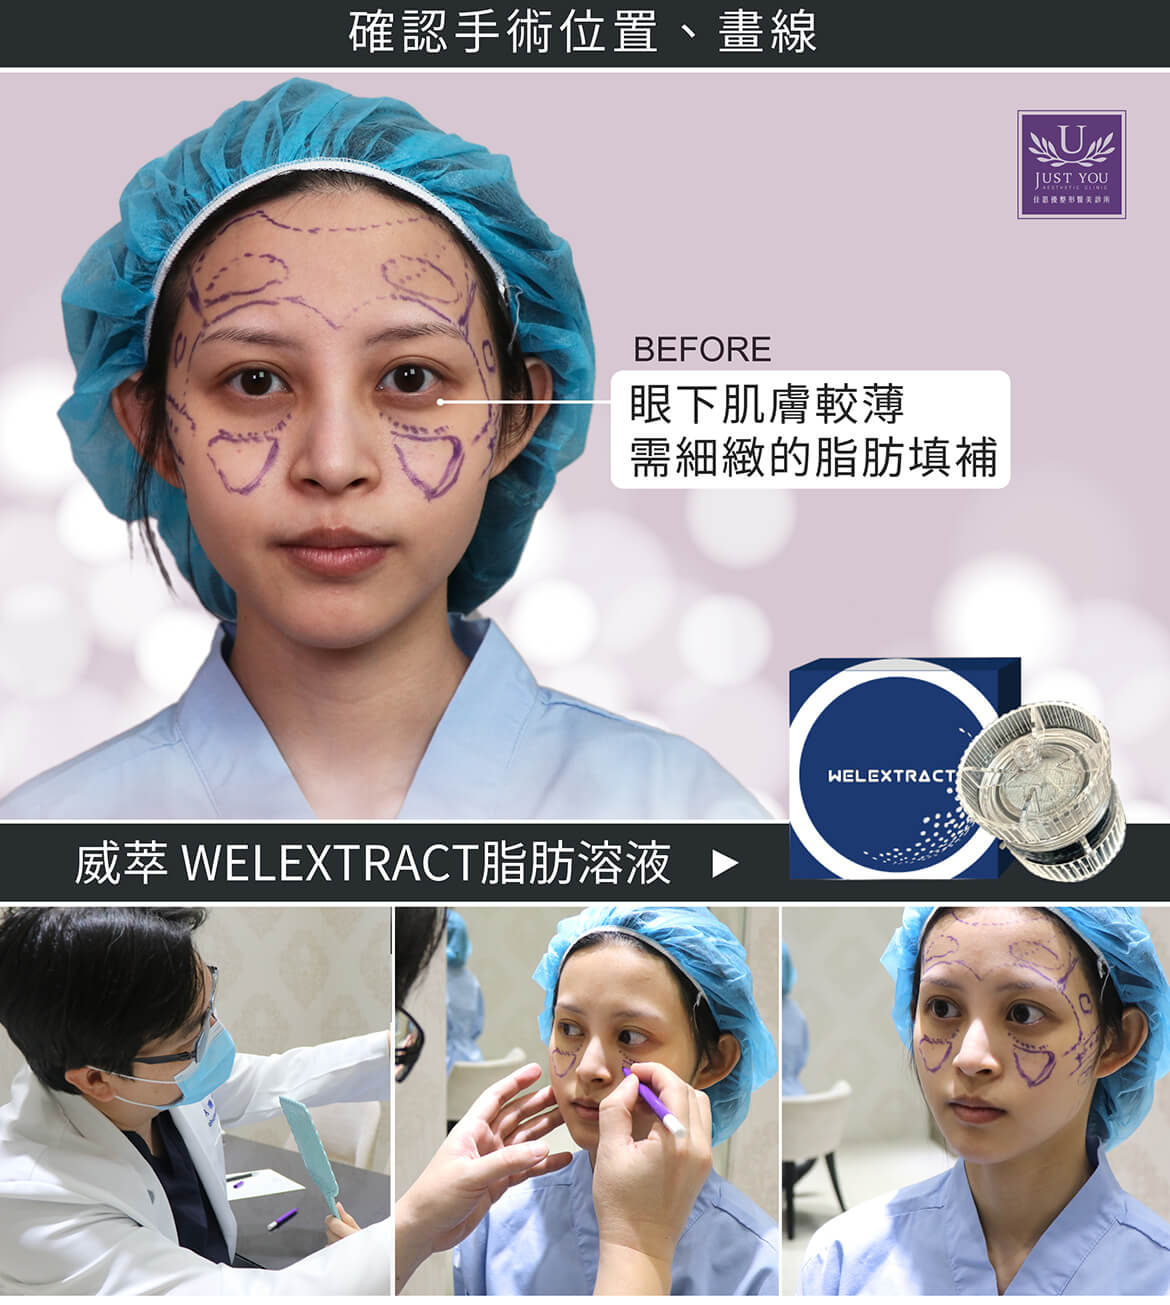 WELEXTRACT威萃脂肪溶液全臉補脂手術《確認手術位置、畫線》